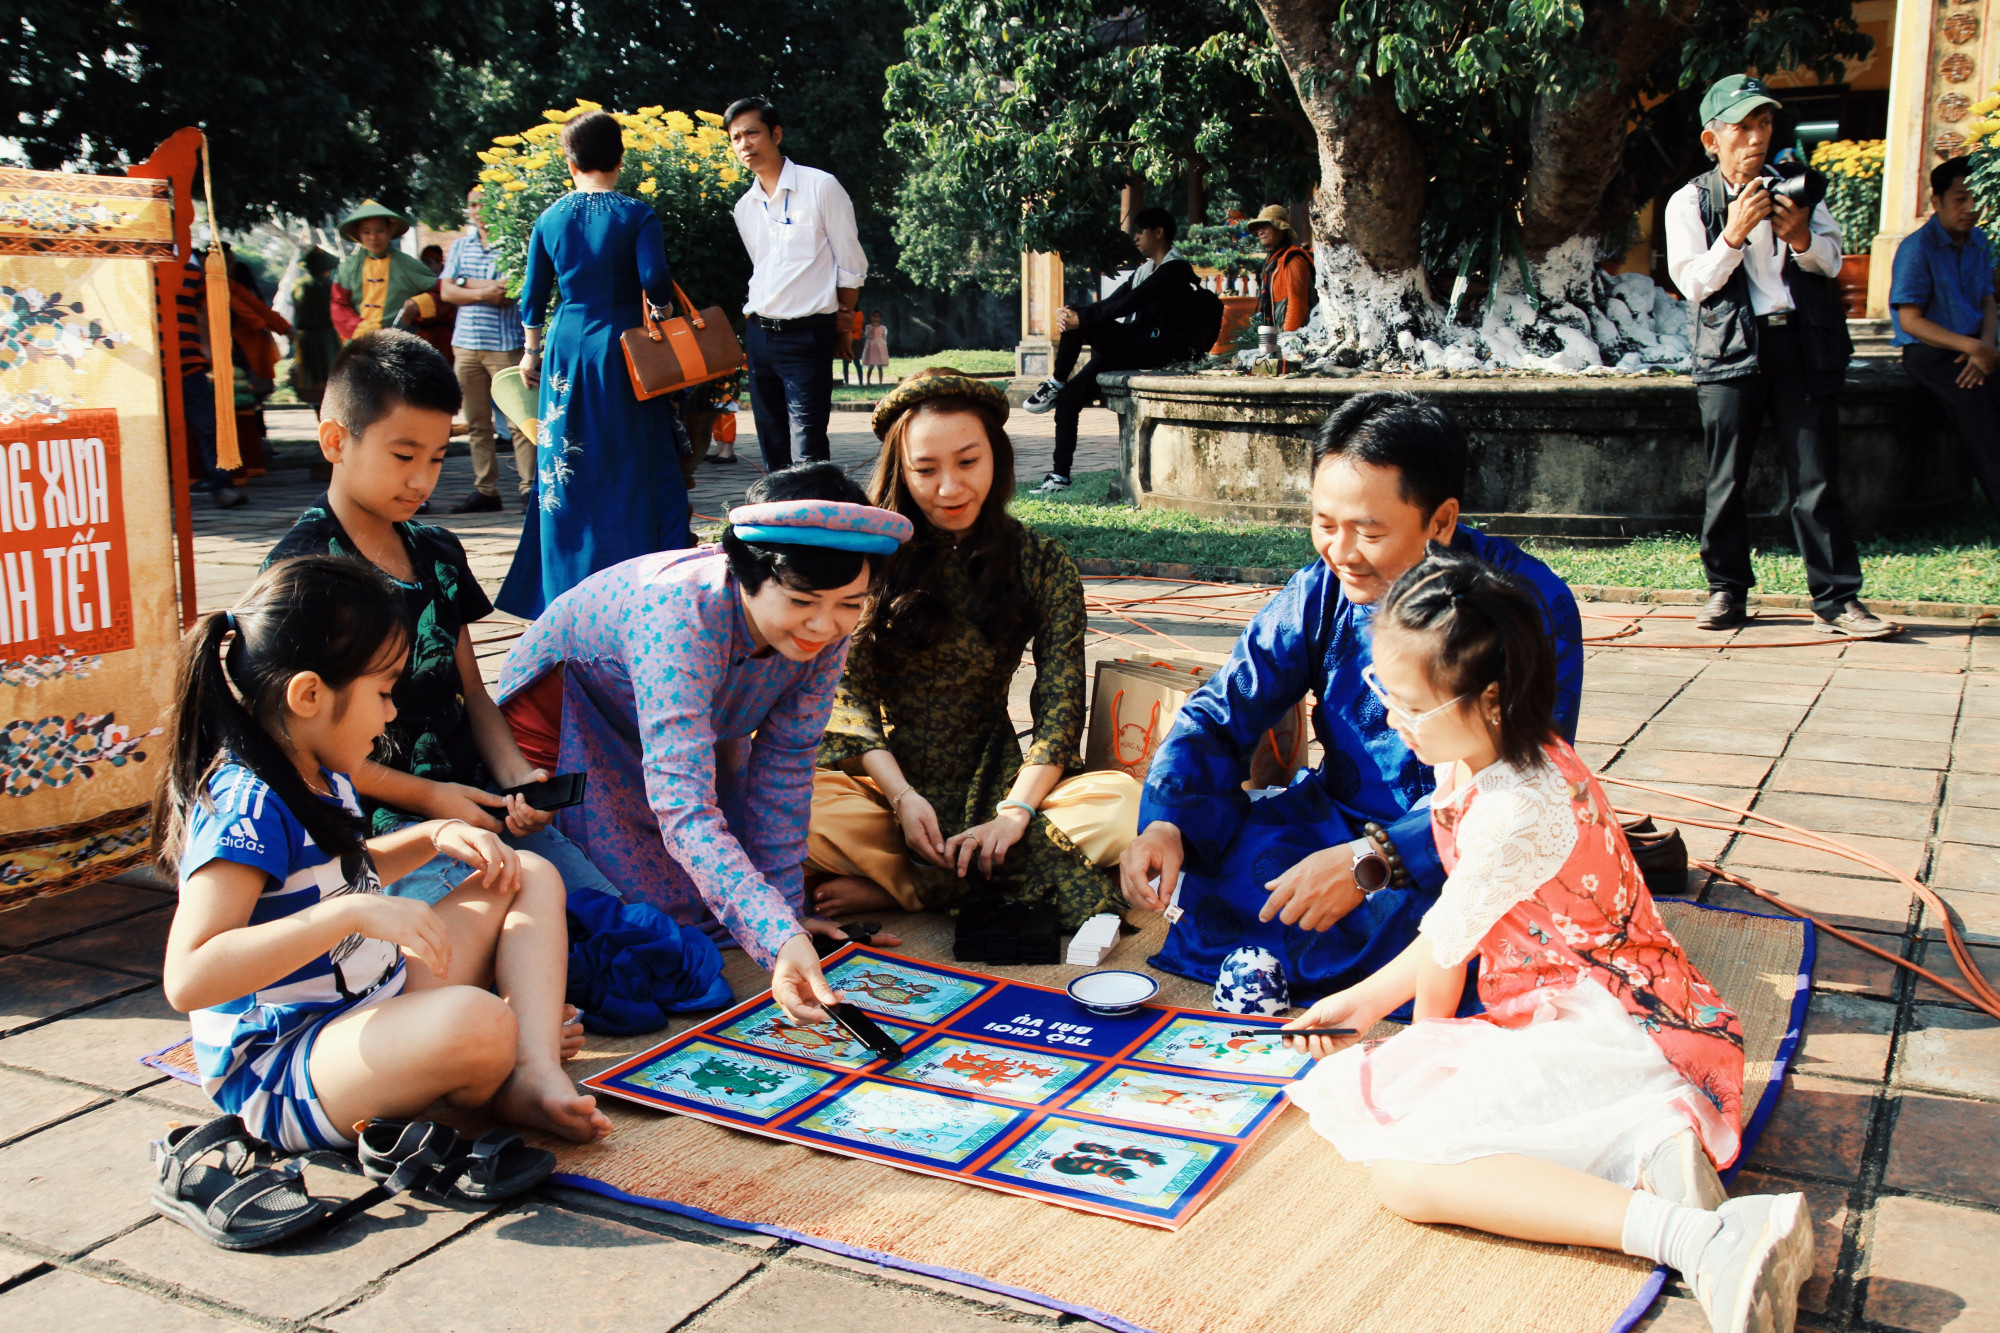 Vào hoàng cung chơi bài vụ cũng là một trong những nét đẹp văn hóa ngày Tết ở xứ Huế